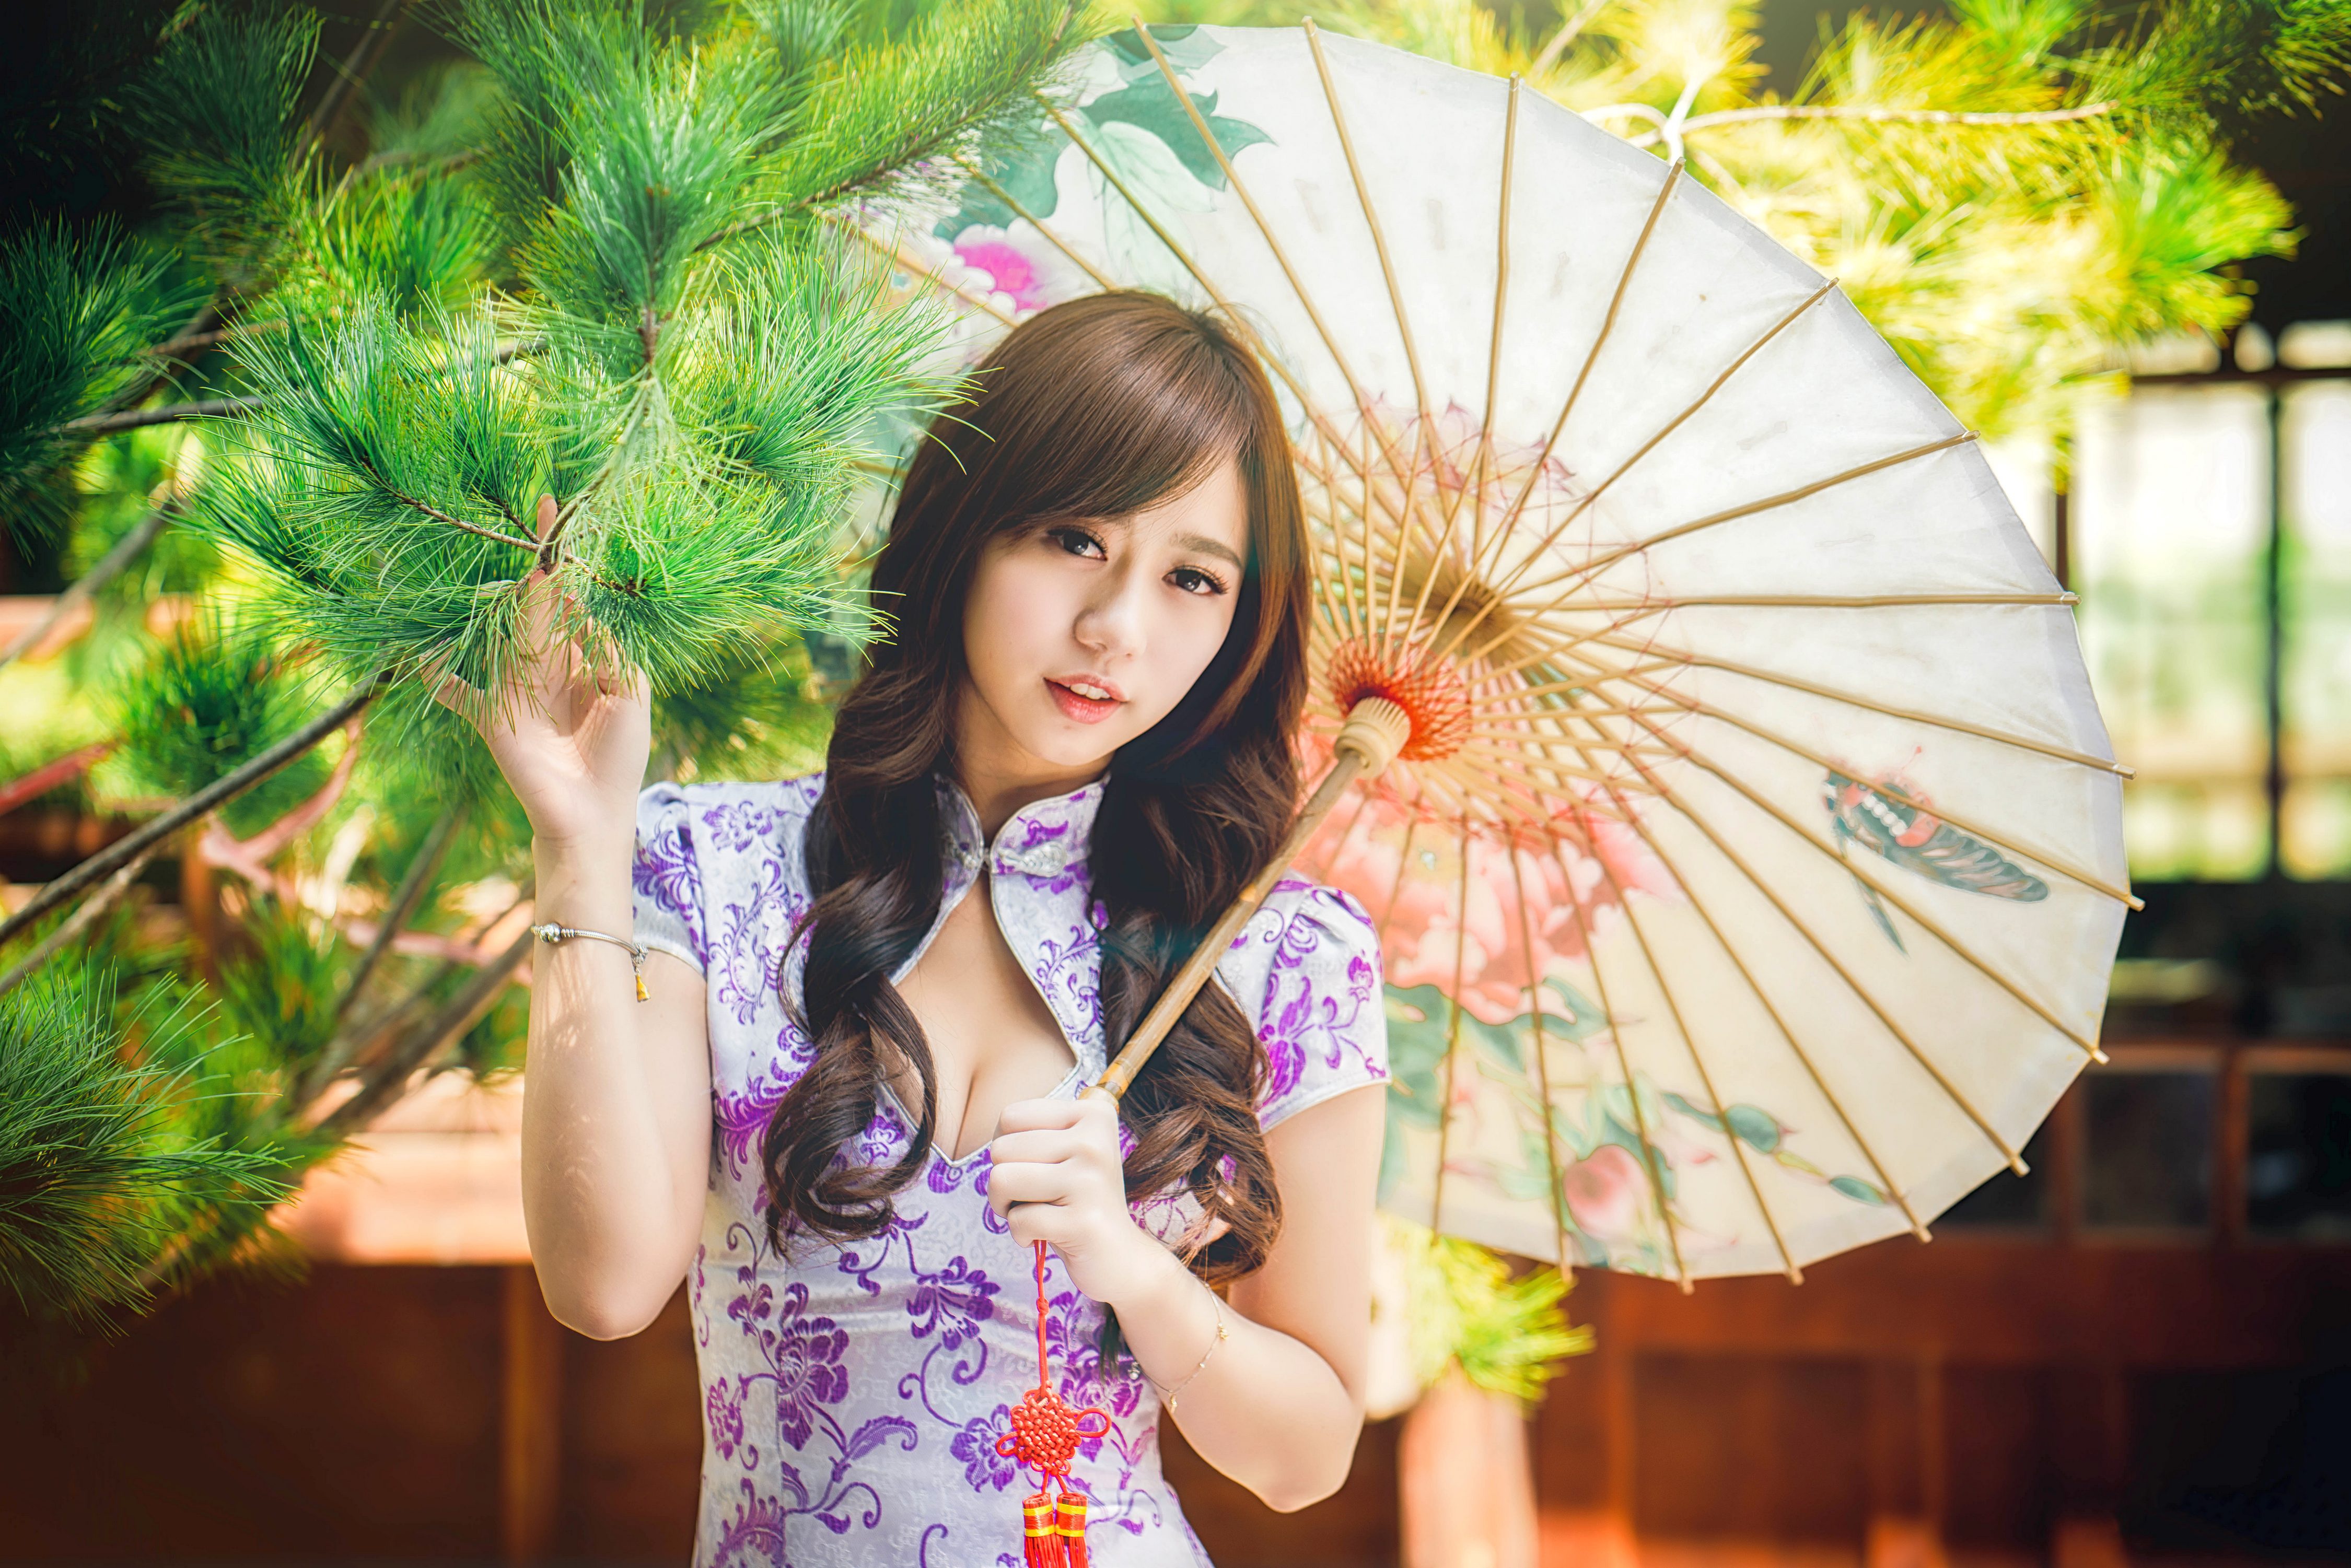 Видео красивой японской девушки. Японская девушка. Красивые японки. Красивые японские девушки. Японка с зонтом.